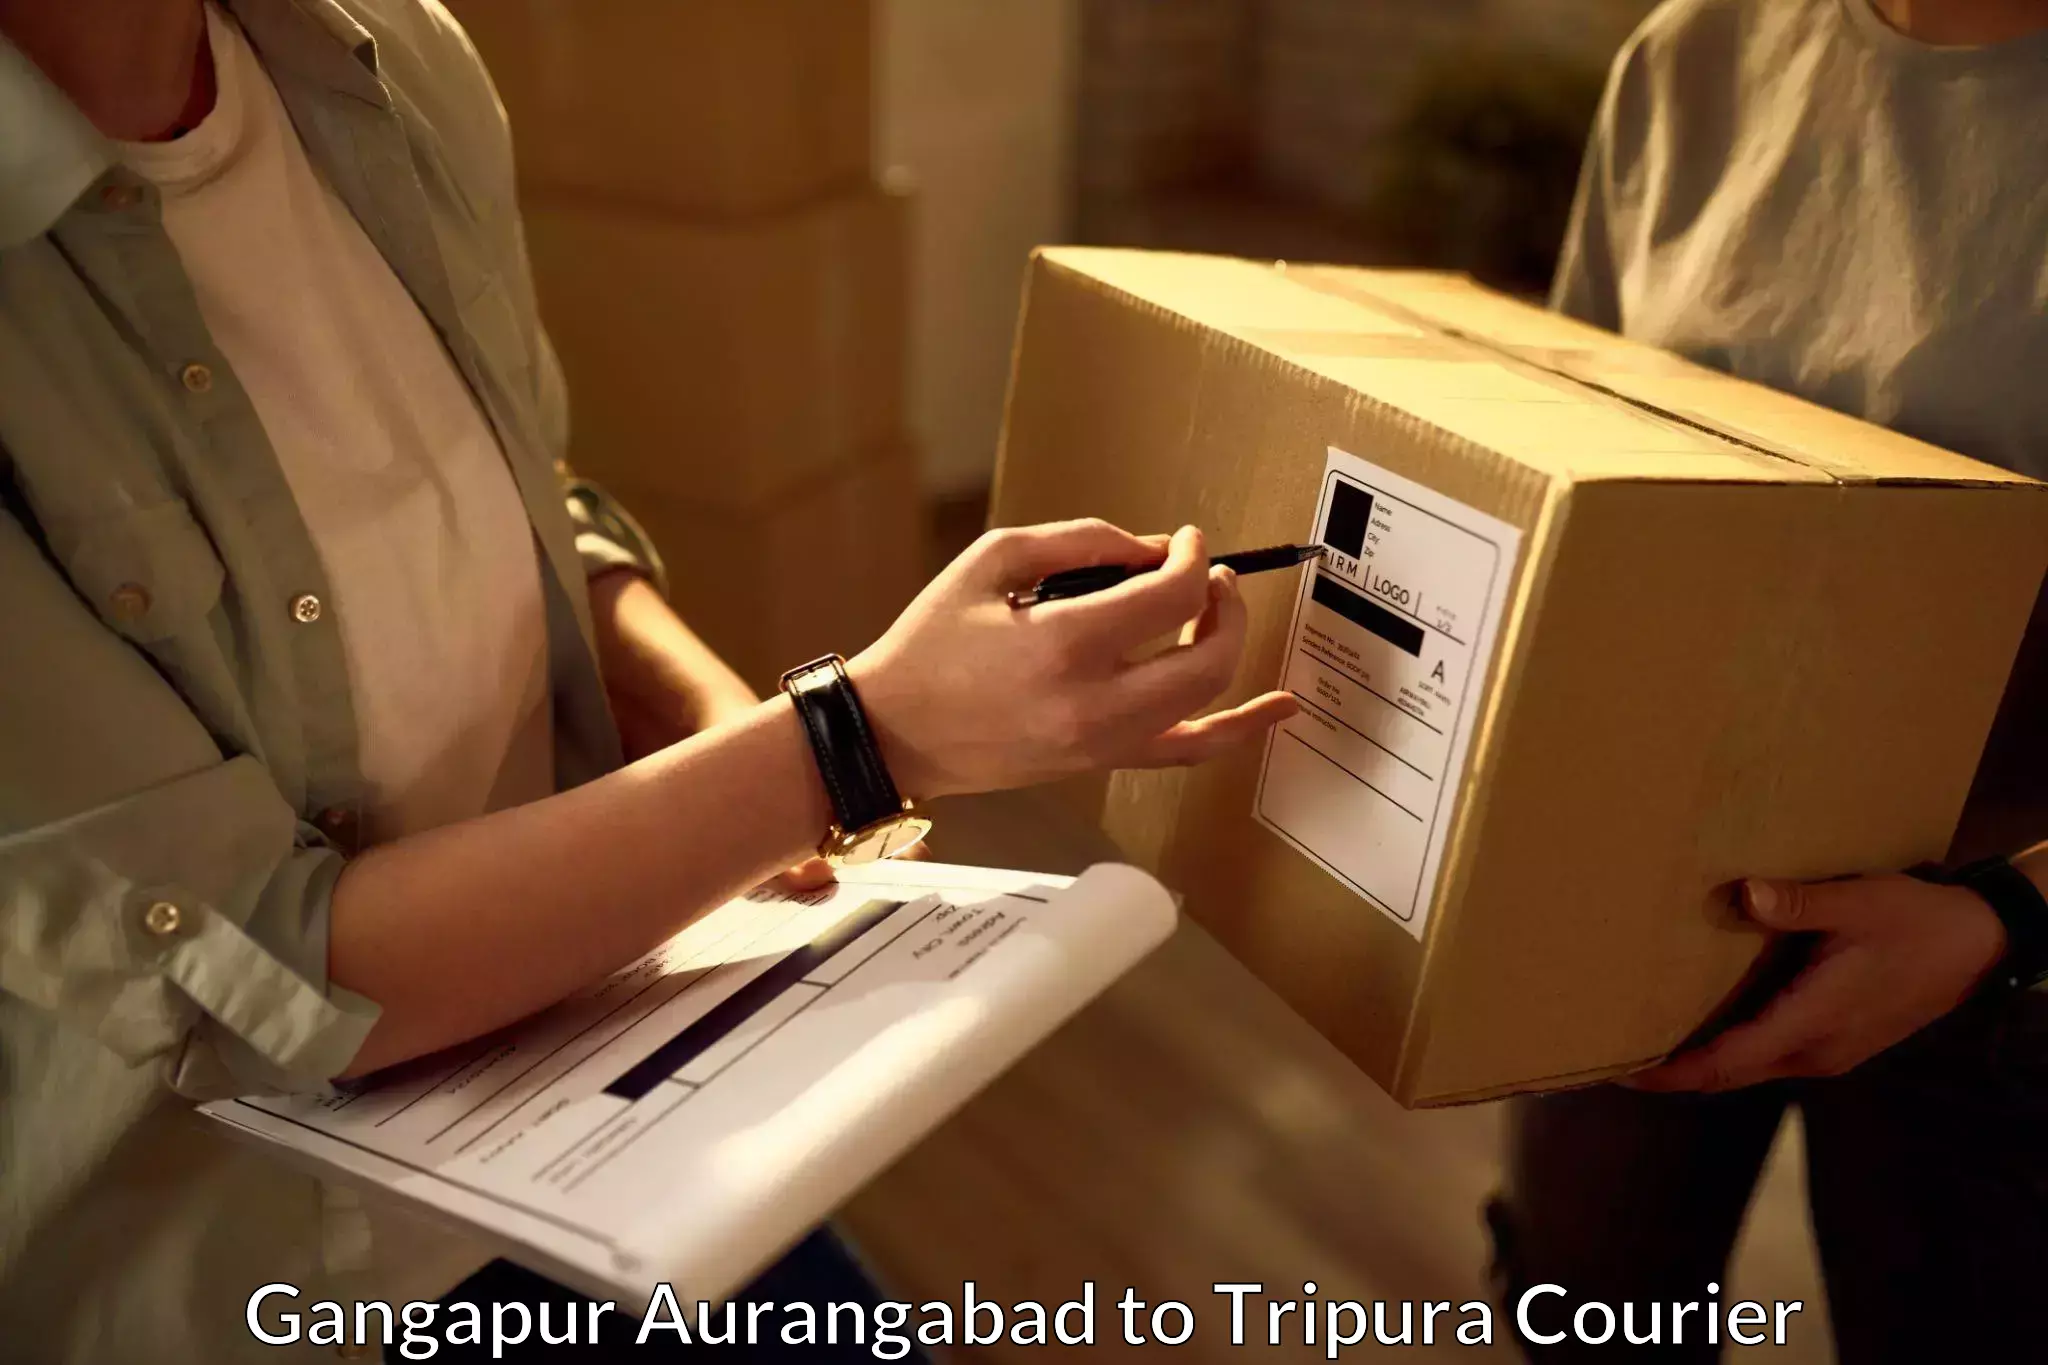 Parcel delivery in Gangapur Aurangabad to Tripura